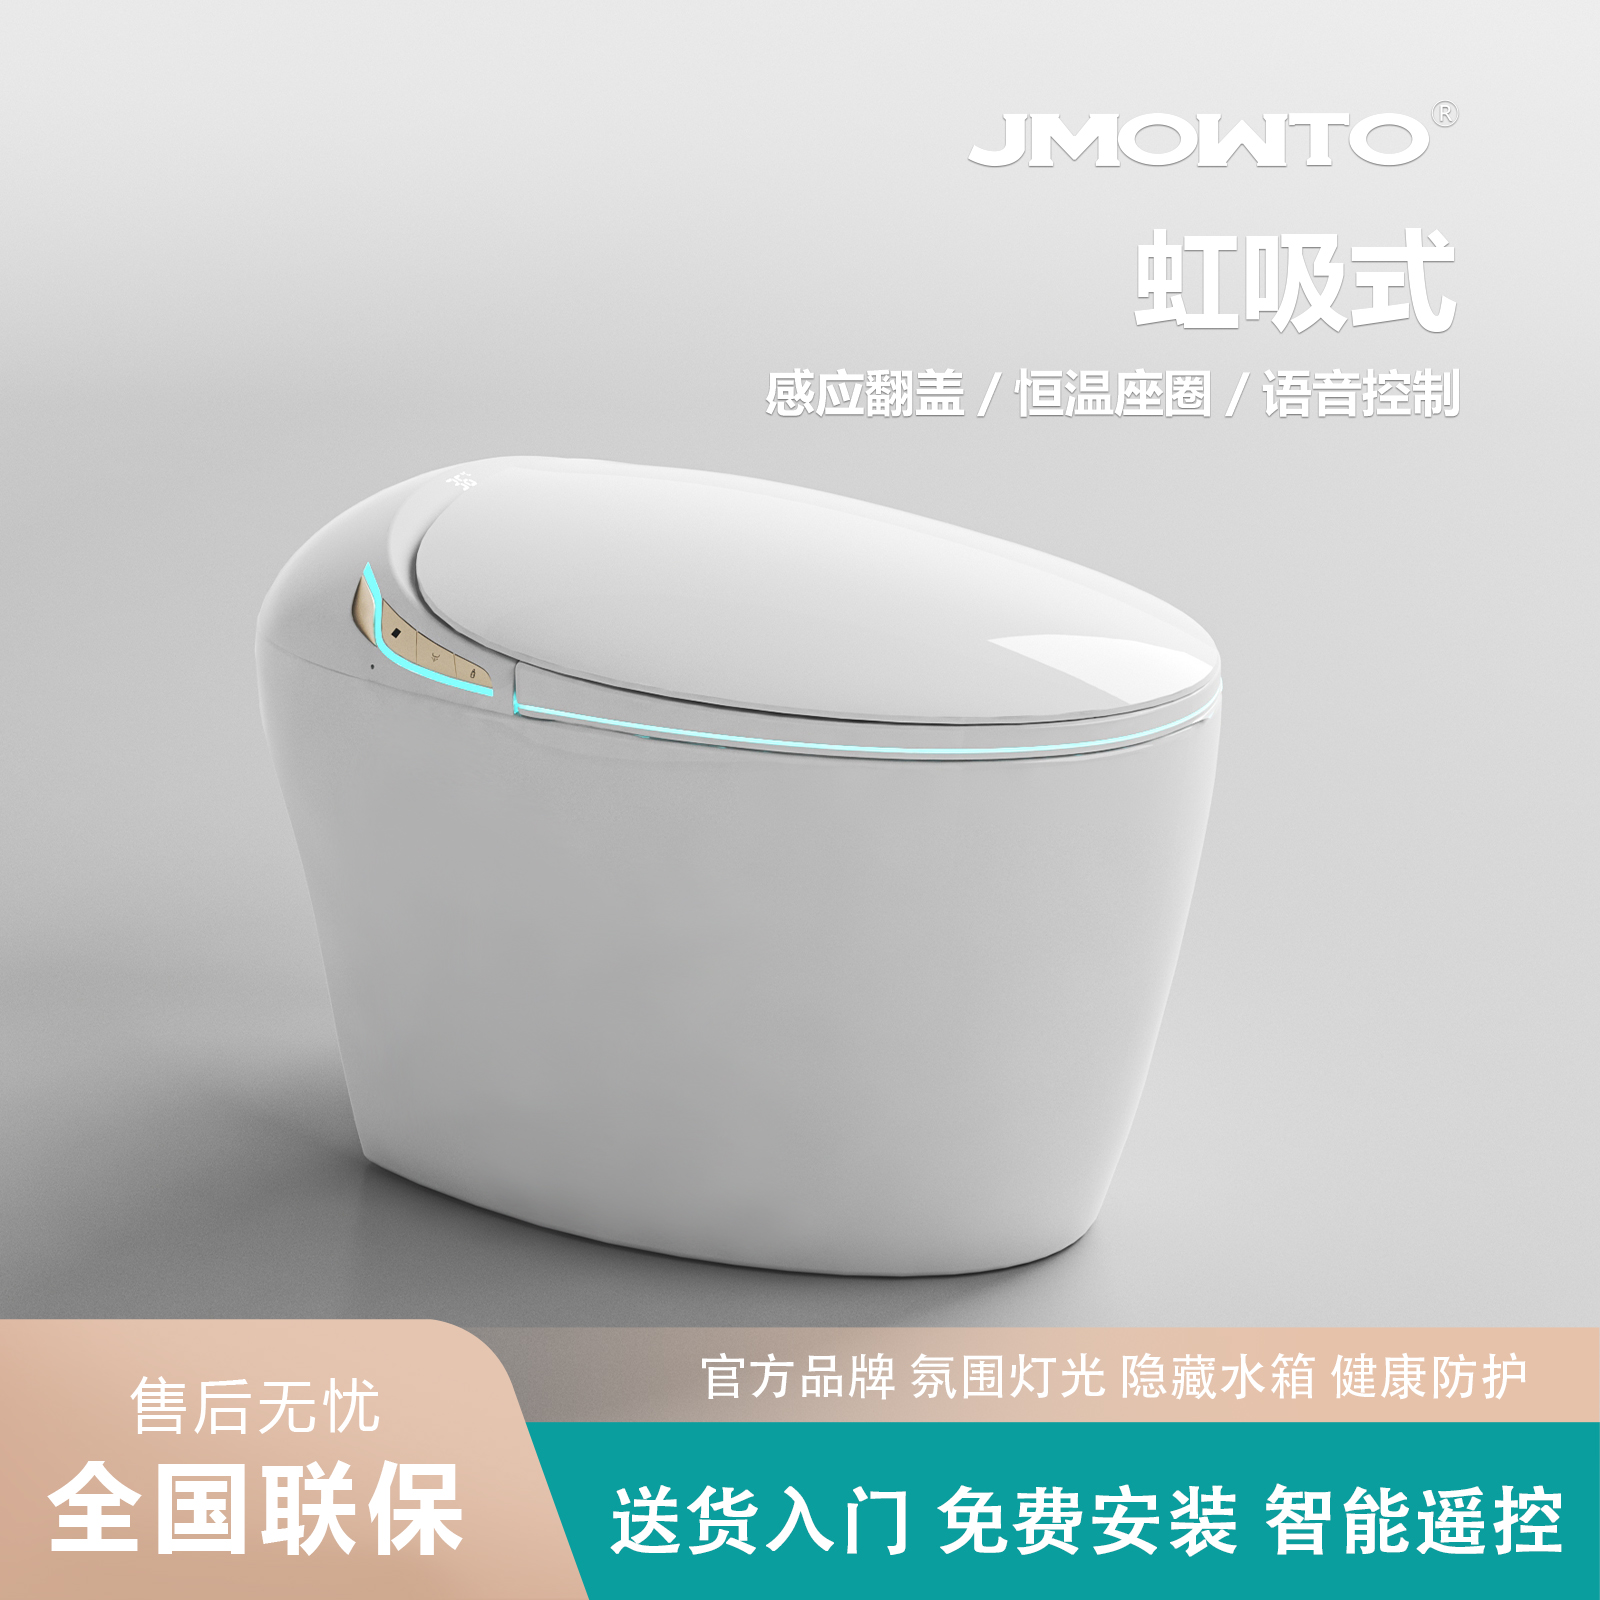 JMOWTO轻智能马桶全自动家用一体式无水压限制即热式全自动座便器